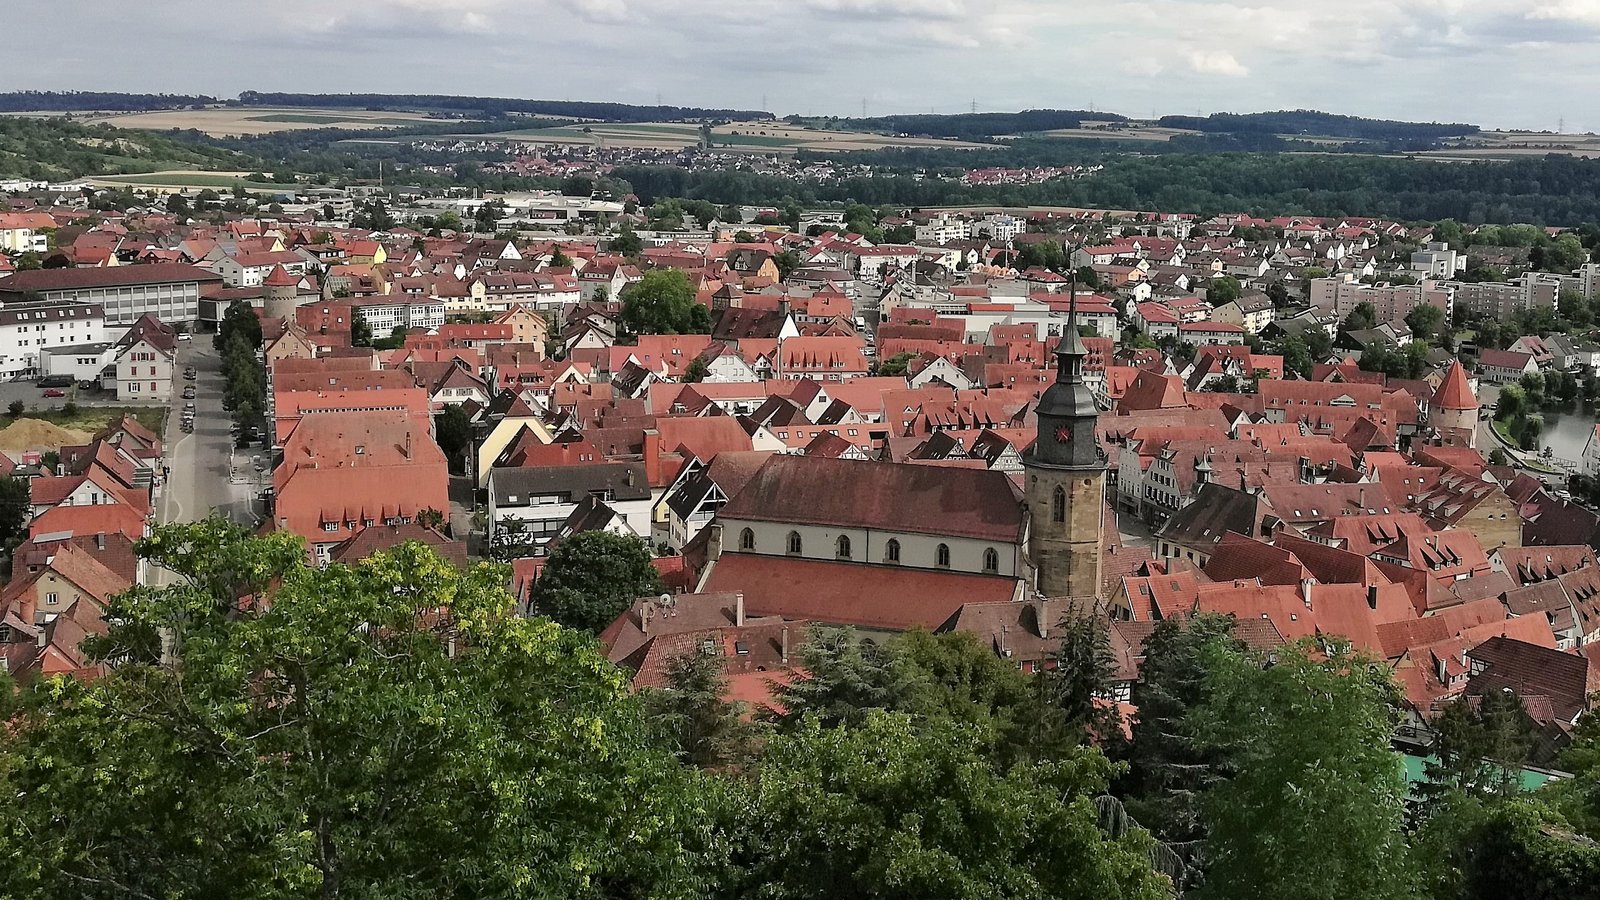 Blick vom Kaltenstein auf die Vaihinger Innenstadt, die per Satzung als historische Gesamtanlage unter Schutz gestellt wird. Foto: Arning